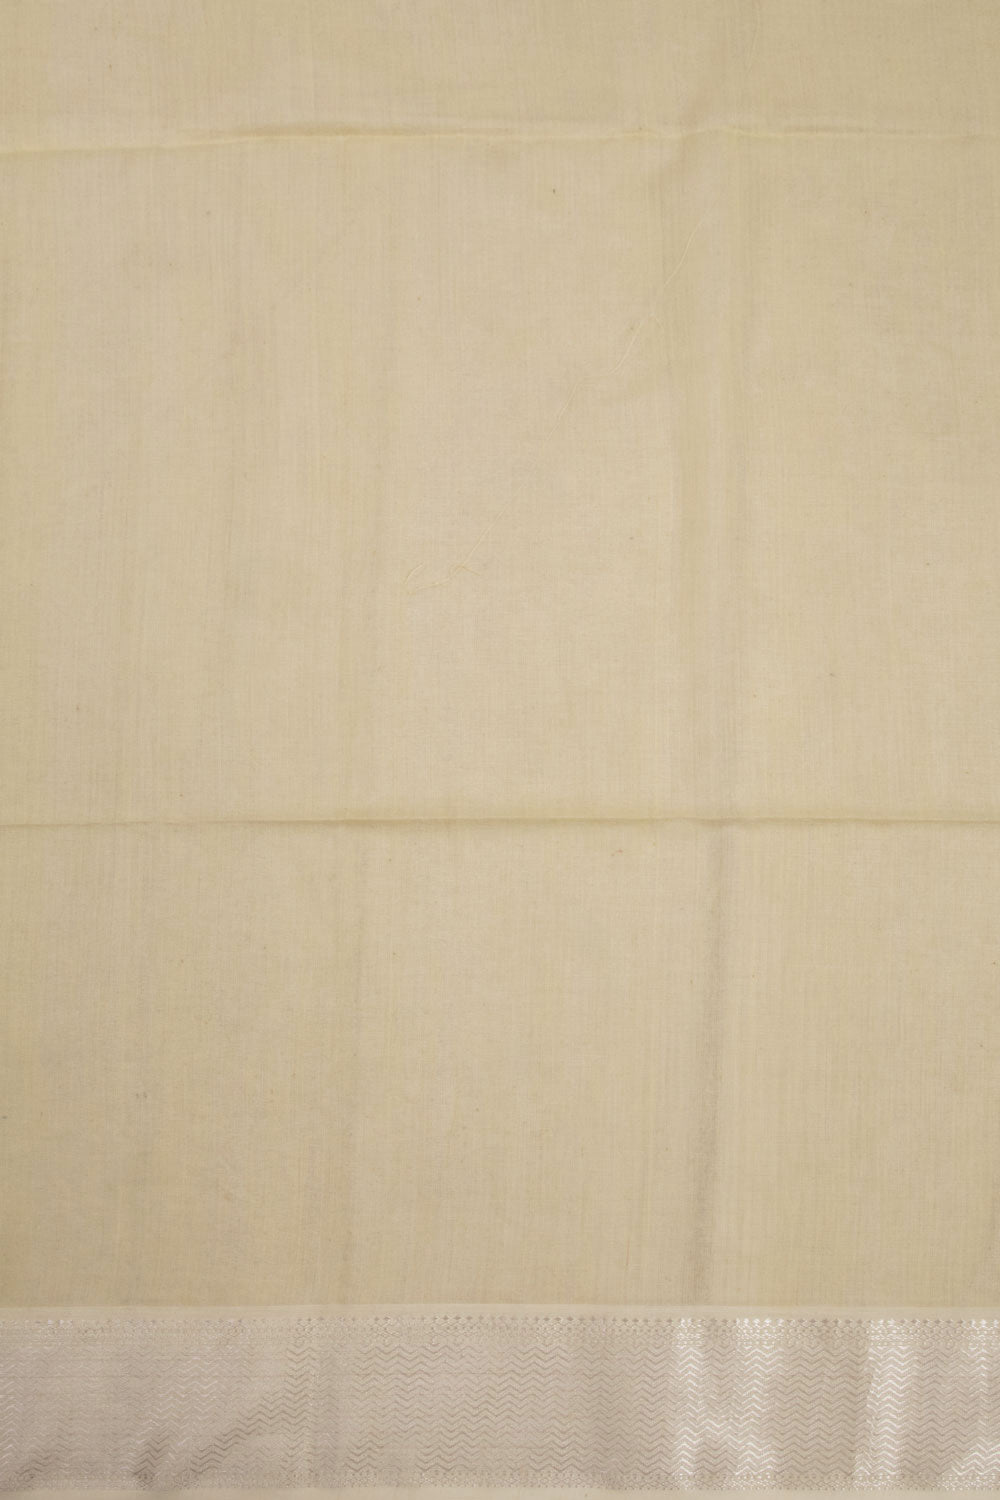 Yellow Handloom Maheshwari Silk Cotton Saree 10068879 - Avishya